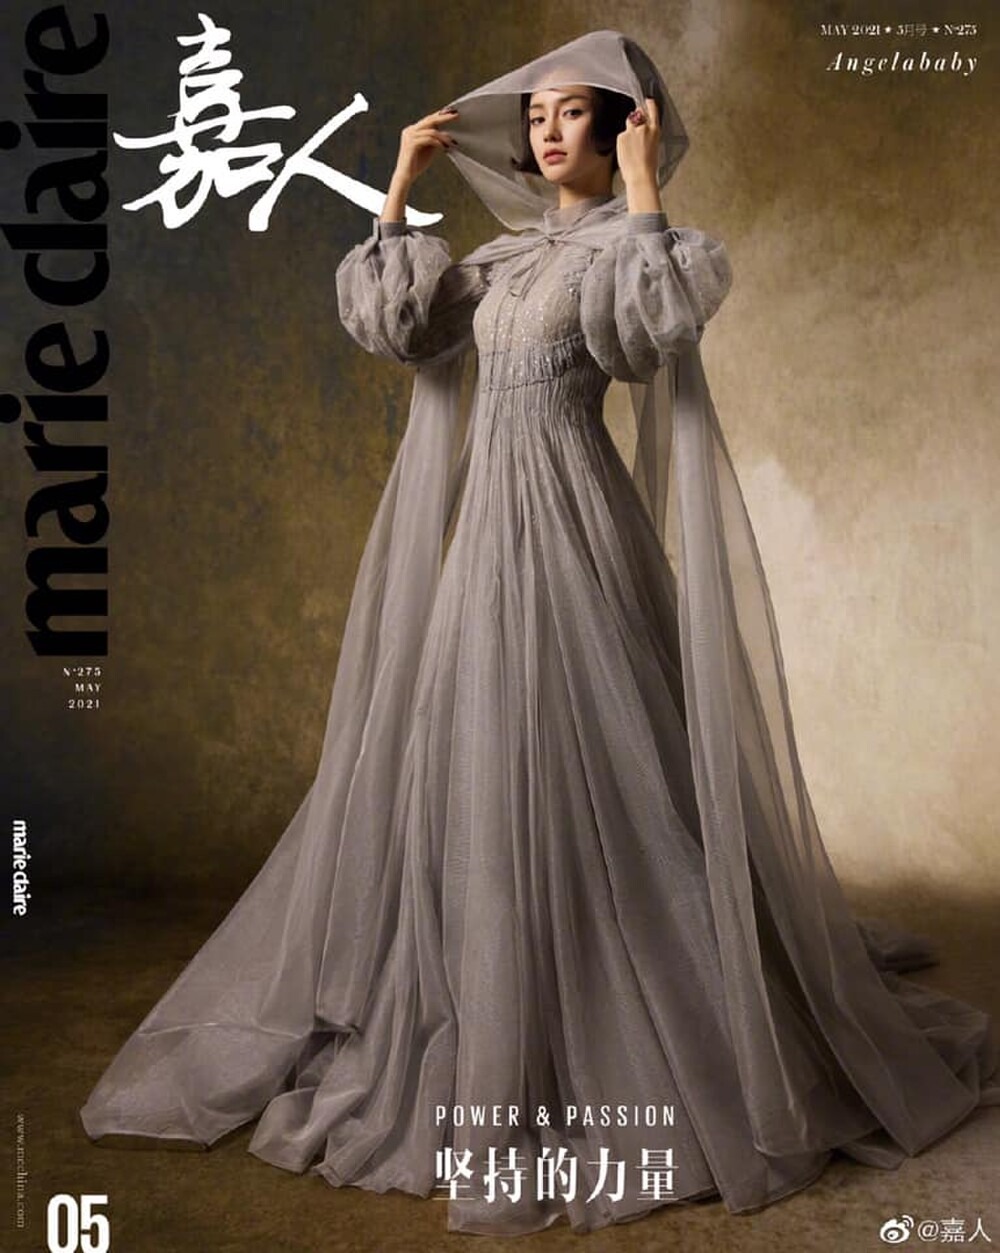 Angelababy diện váy Dior Haute Couture Xuân/Hè 2021 xuất hiện trên bìa tạp chí Marie Claire số tháng 5